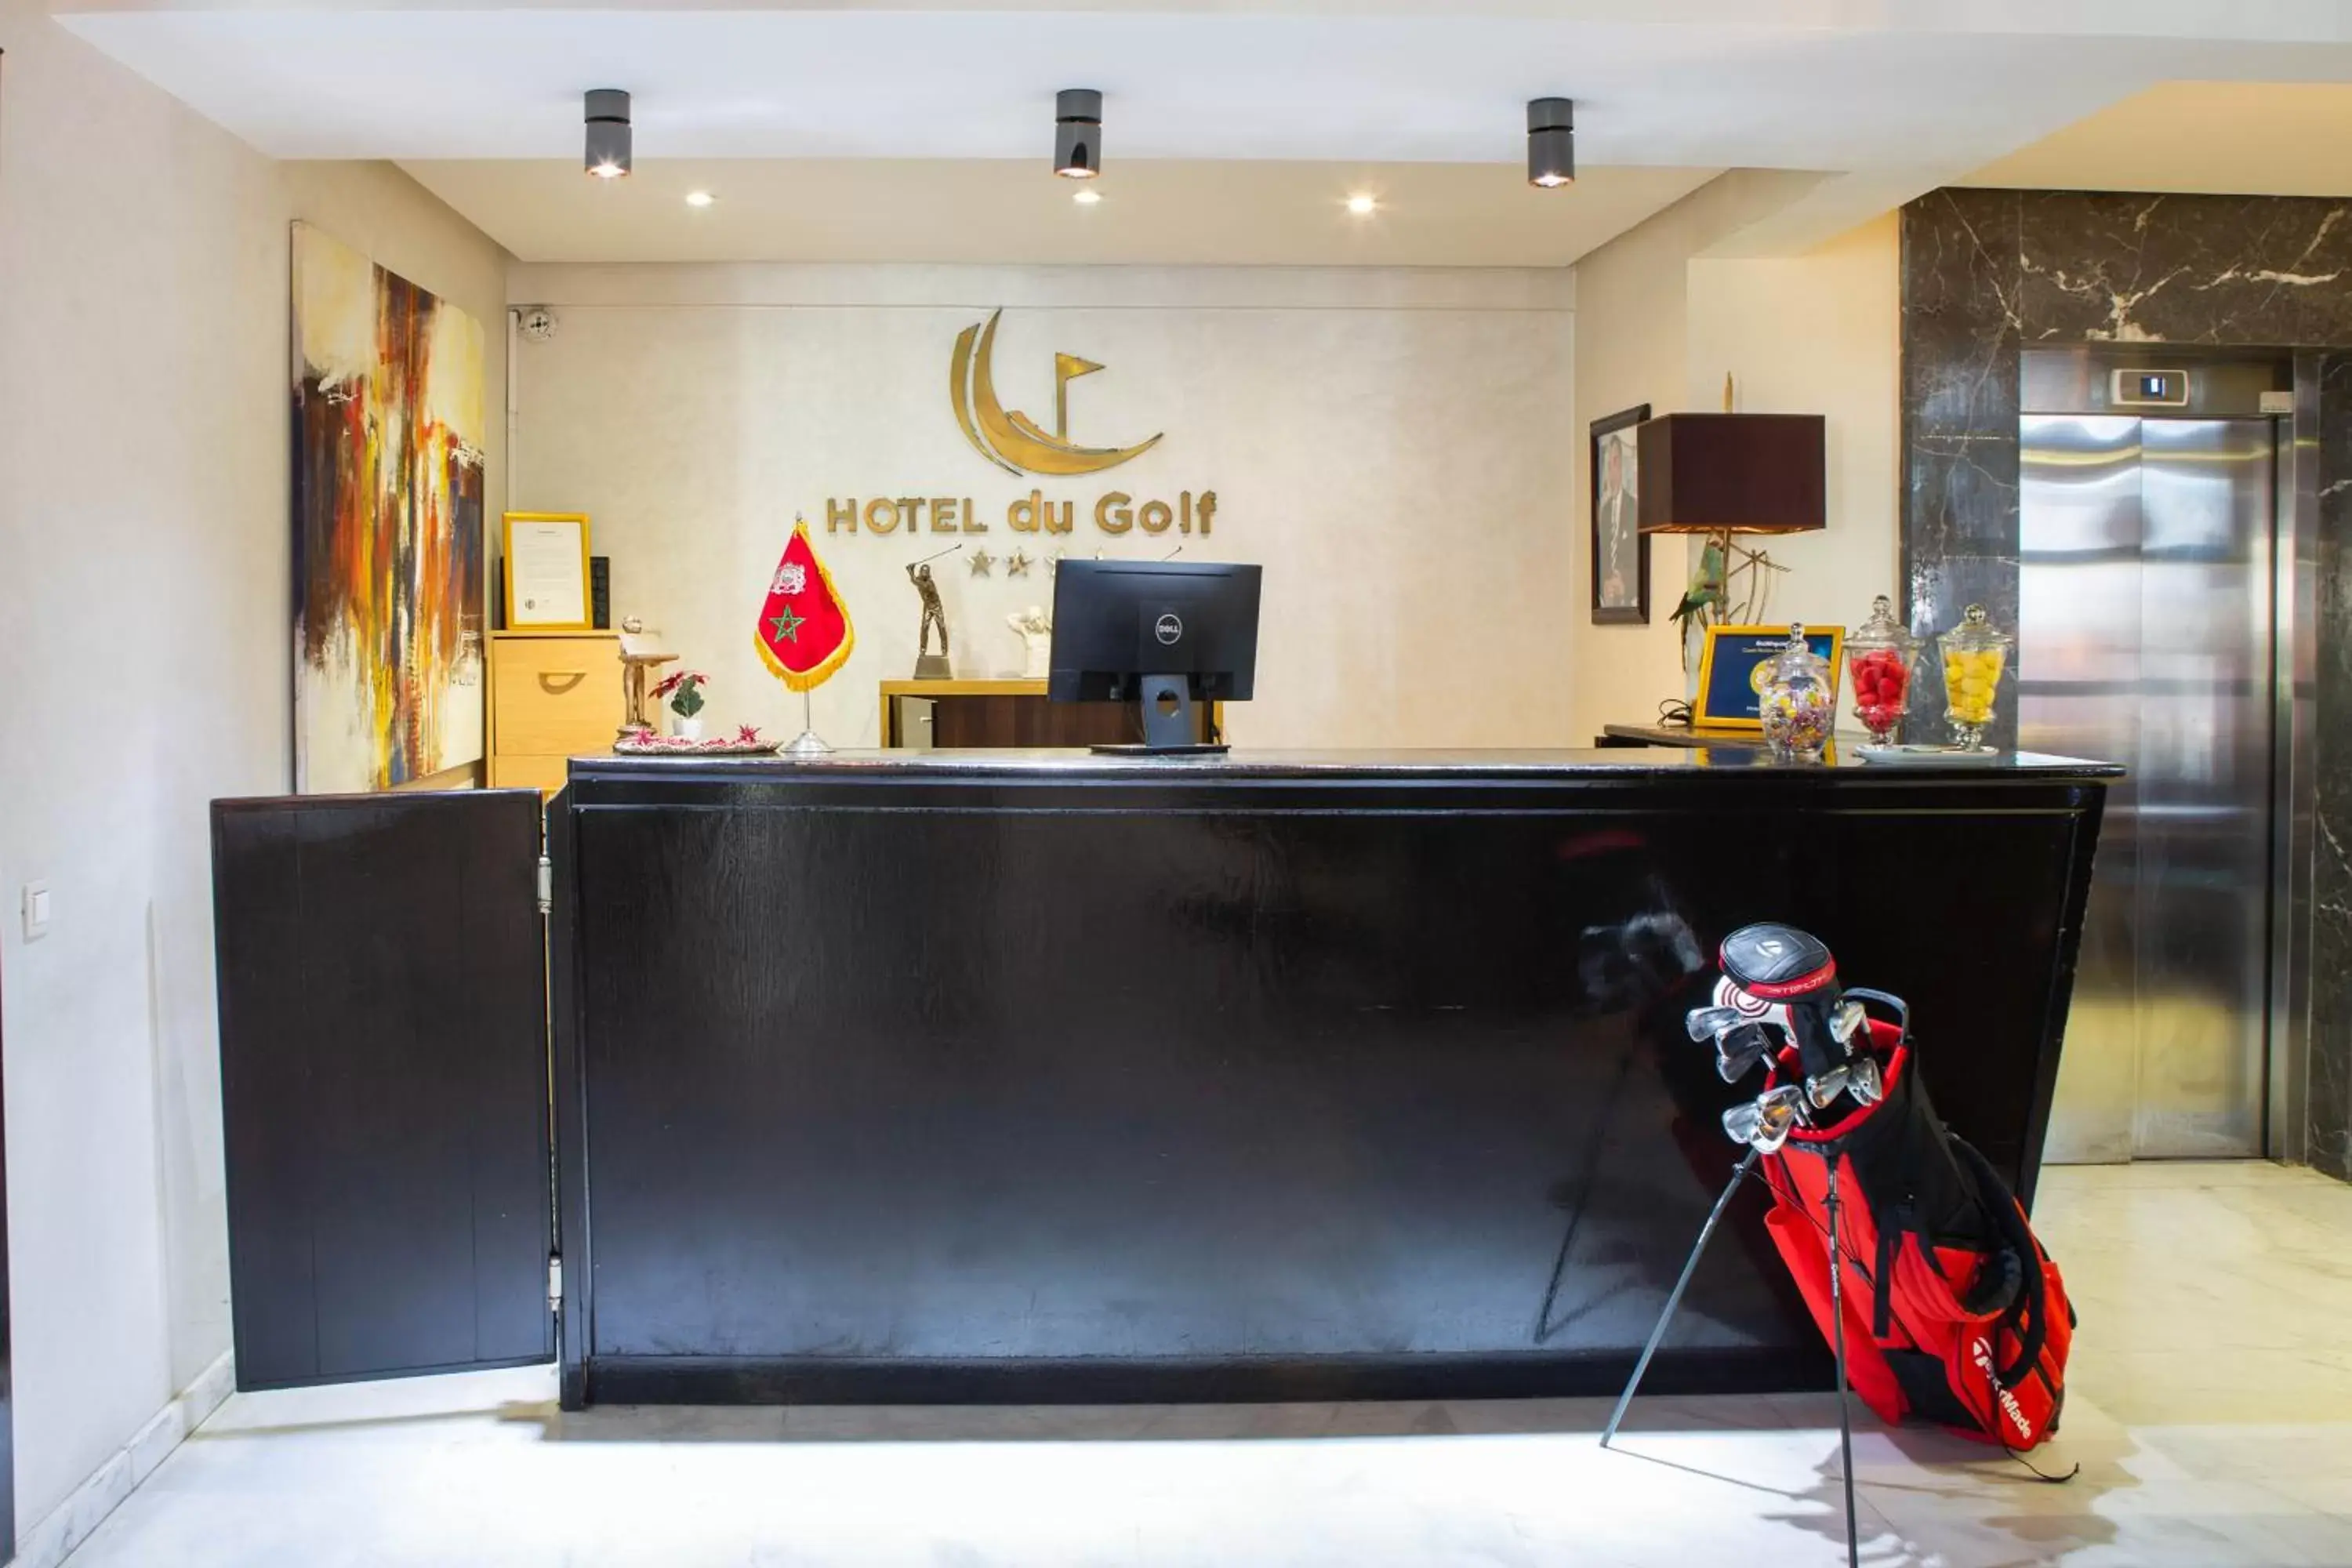 Lobby or reception, Lobby/Reception in Hotel du Golf